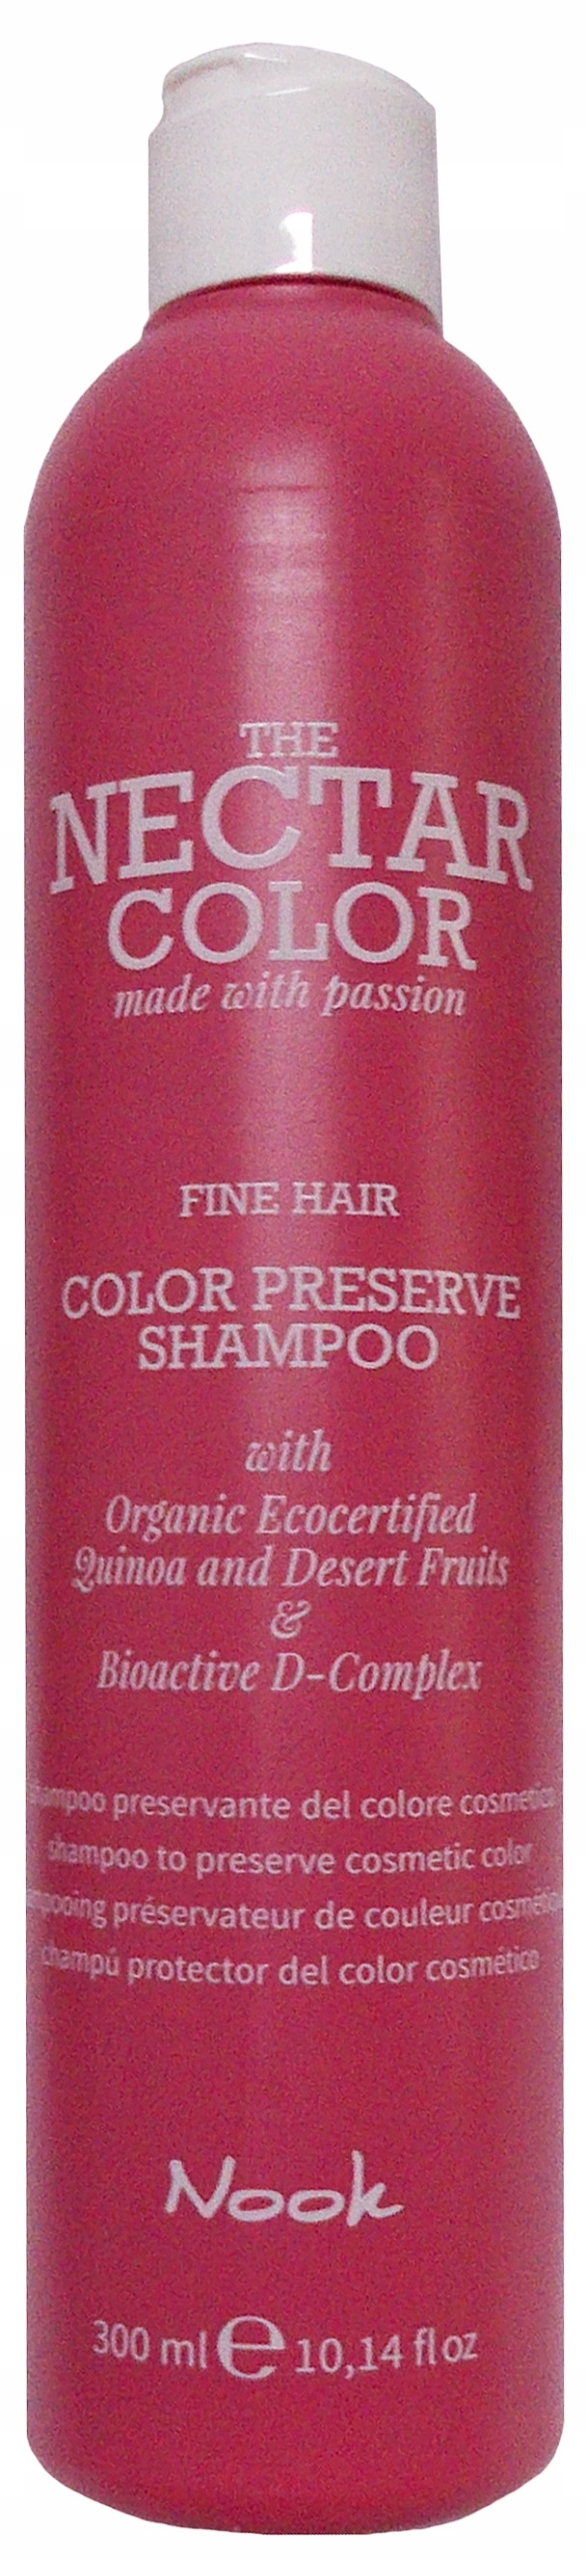 szampon do włosów farbowanych maxima